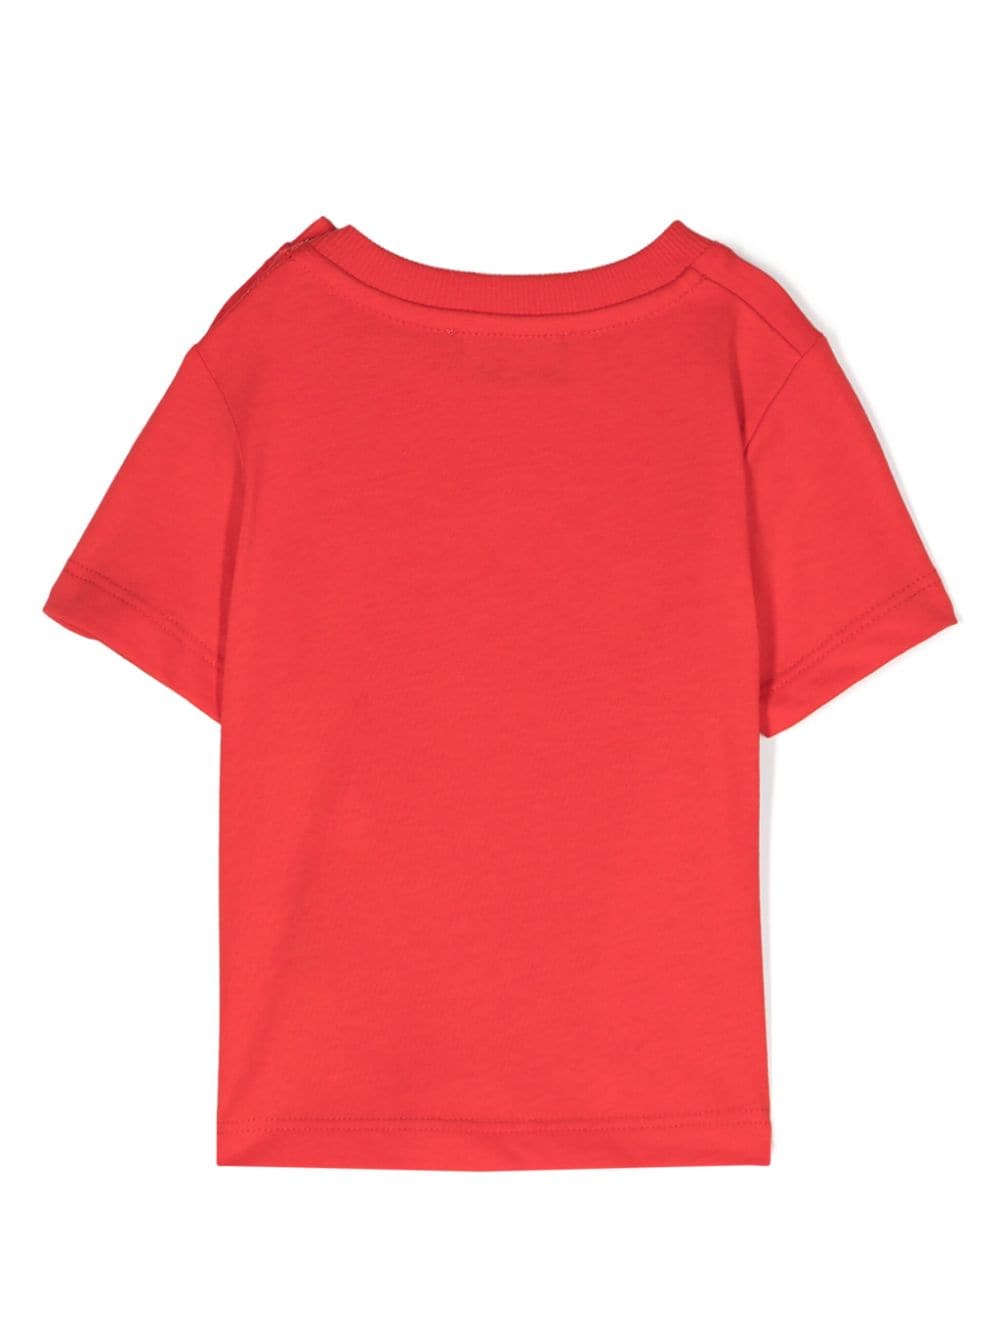 T-shirt rossa neonato